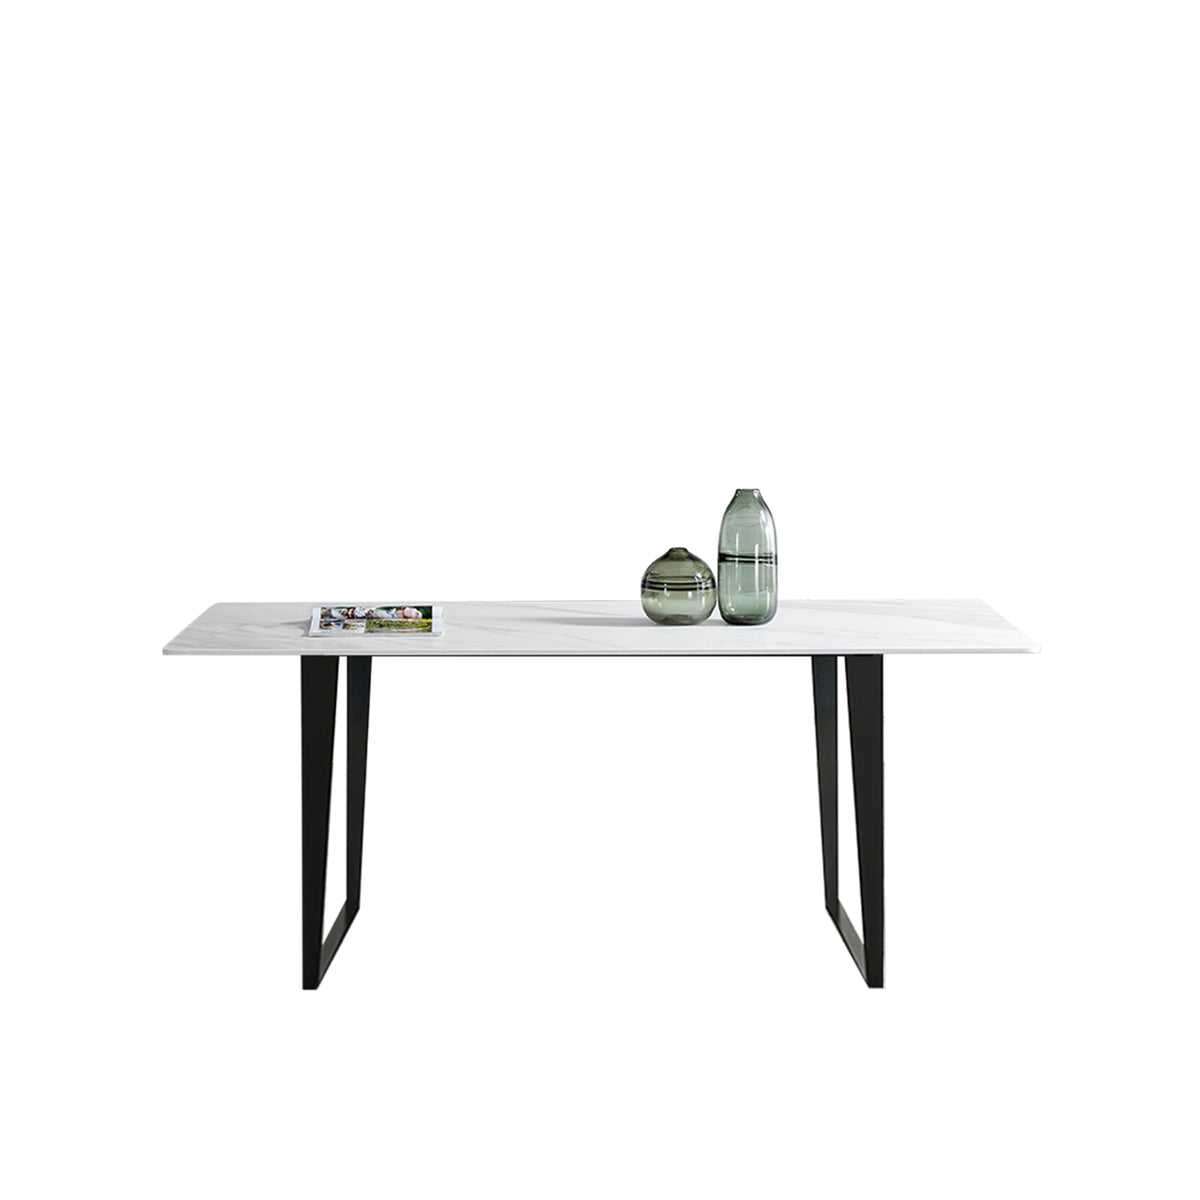 （限量現貨搶購中）FORLI 岩板餐桌, D型腳座, 140*80 公分, 馬肚型